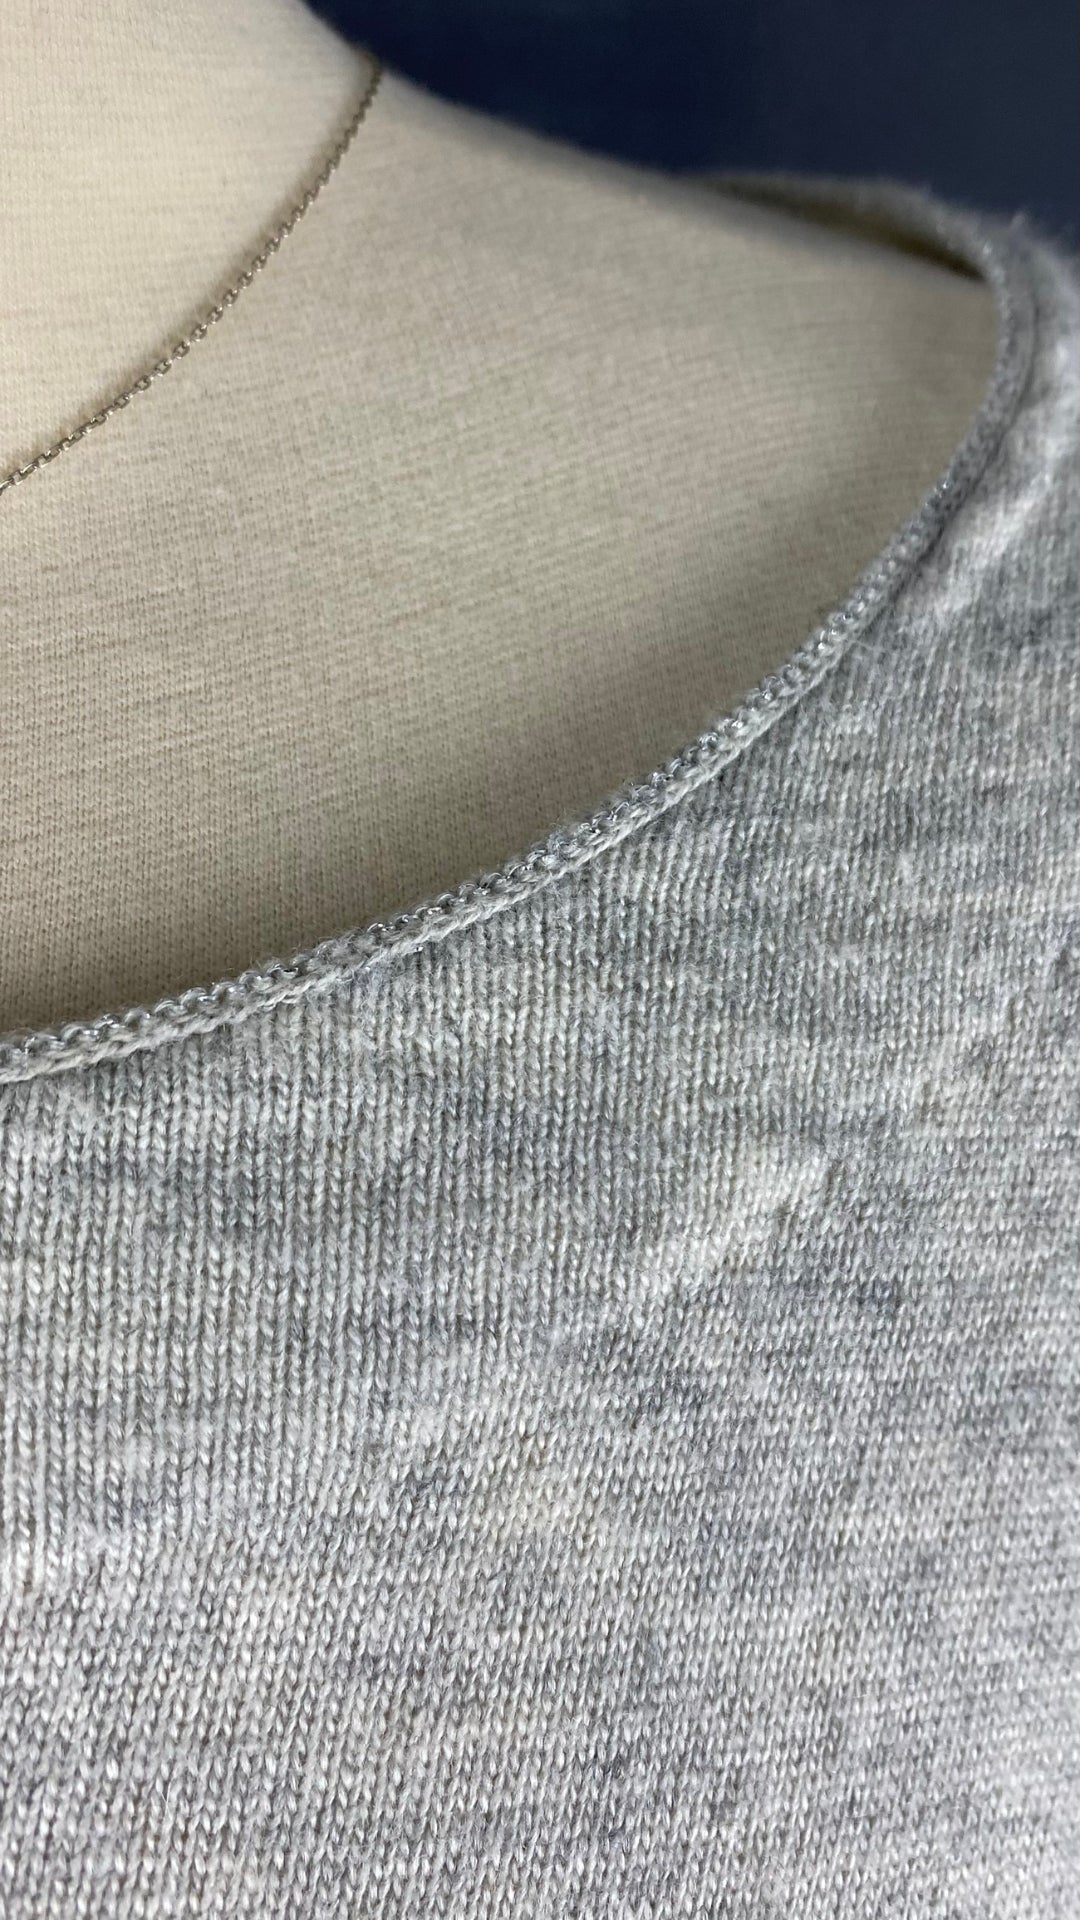 Chandail long en tricot doux gris beige Oui, taille 10 (environ medium). Vue de l'encolure et du fil métallisé.